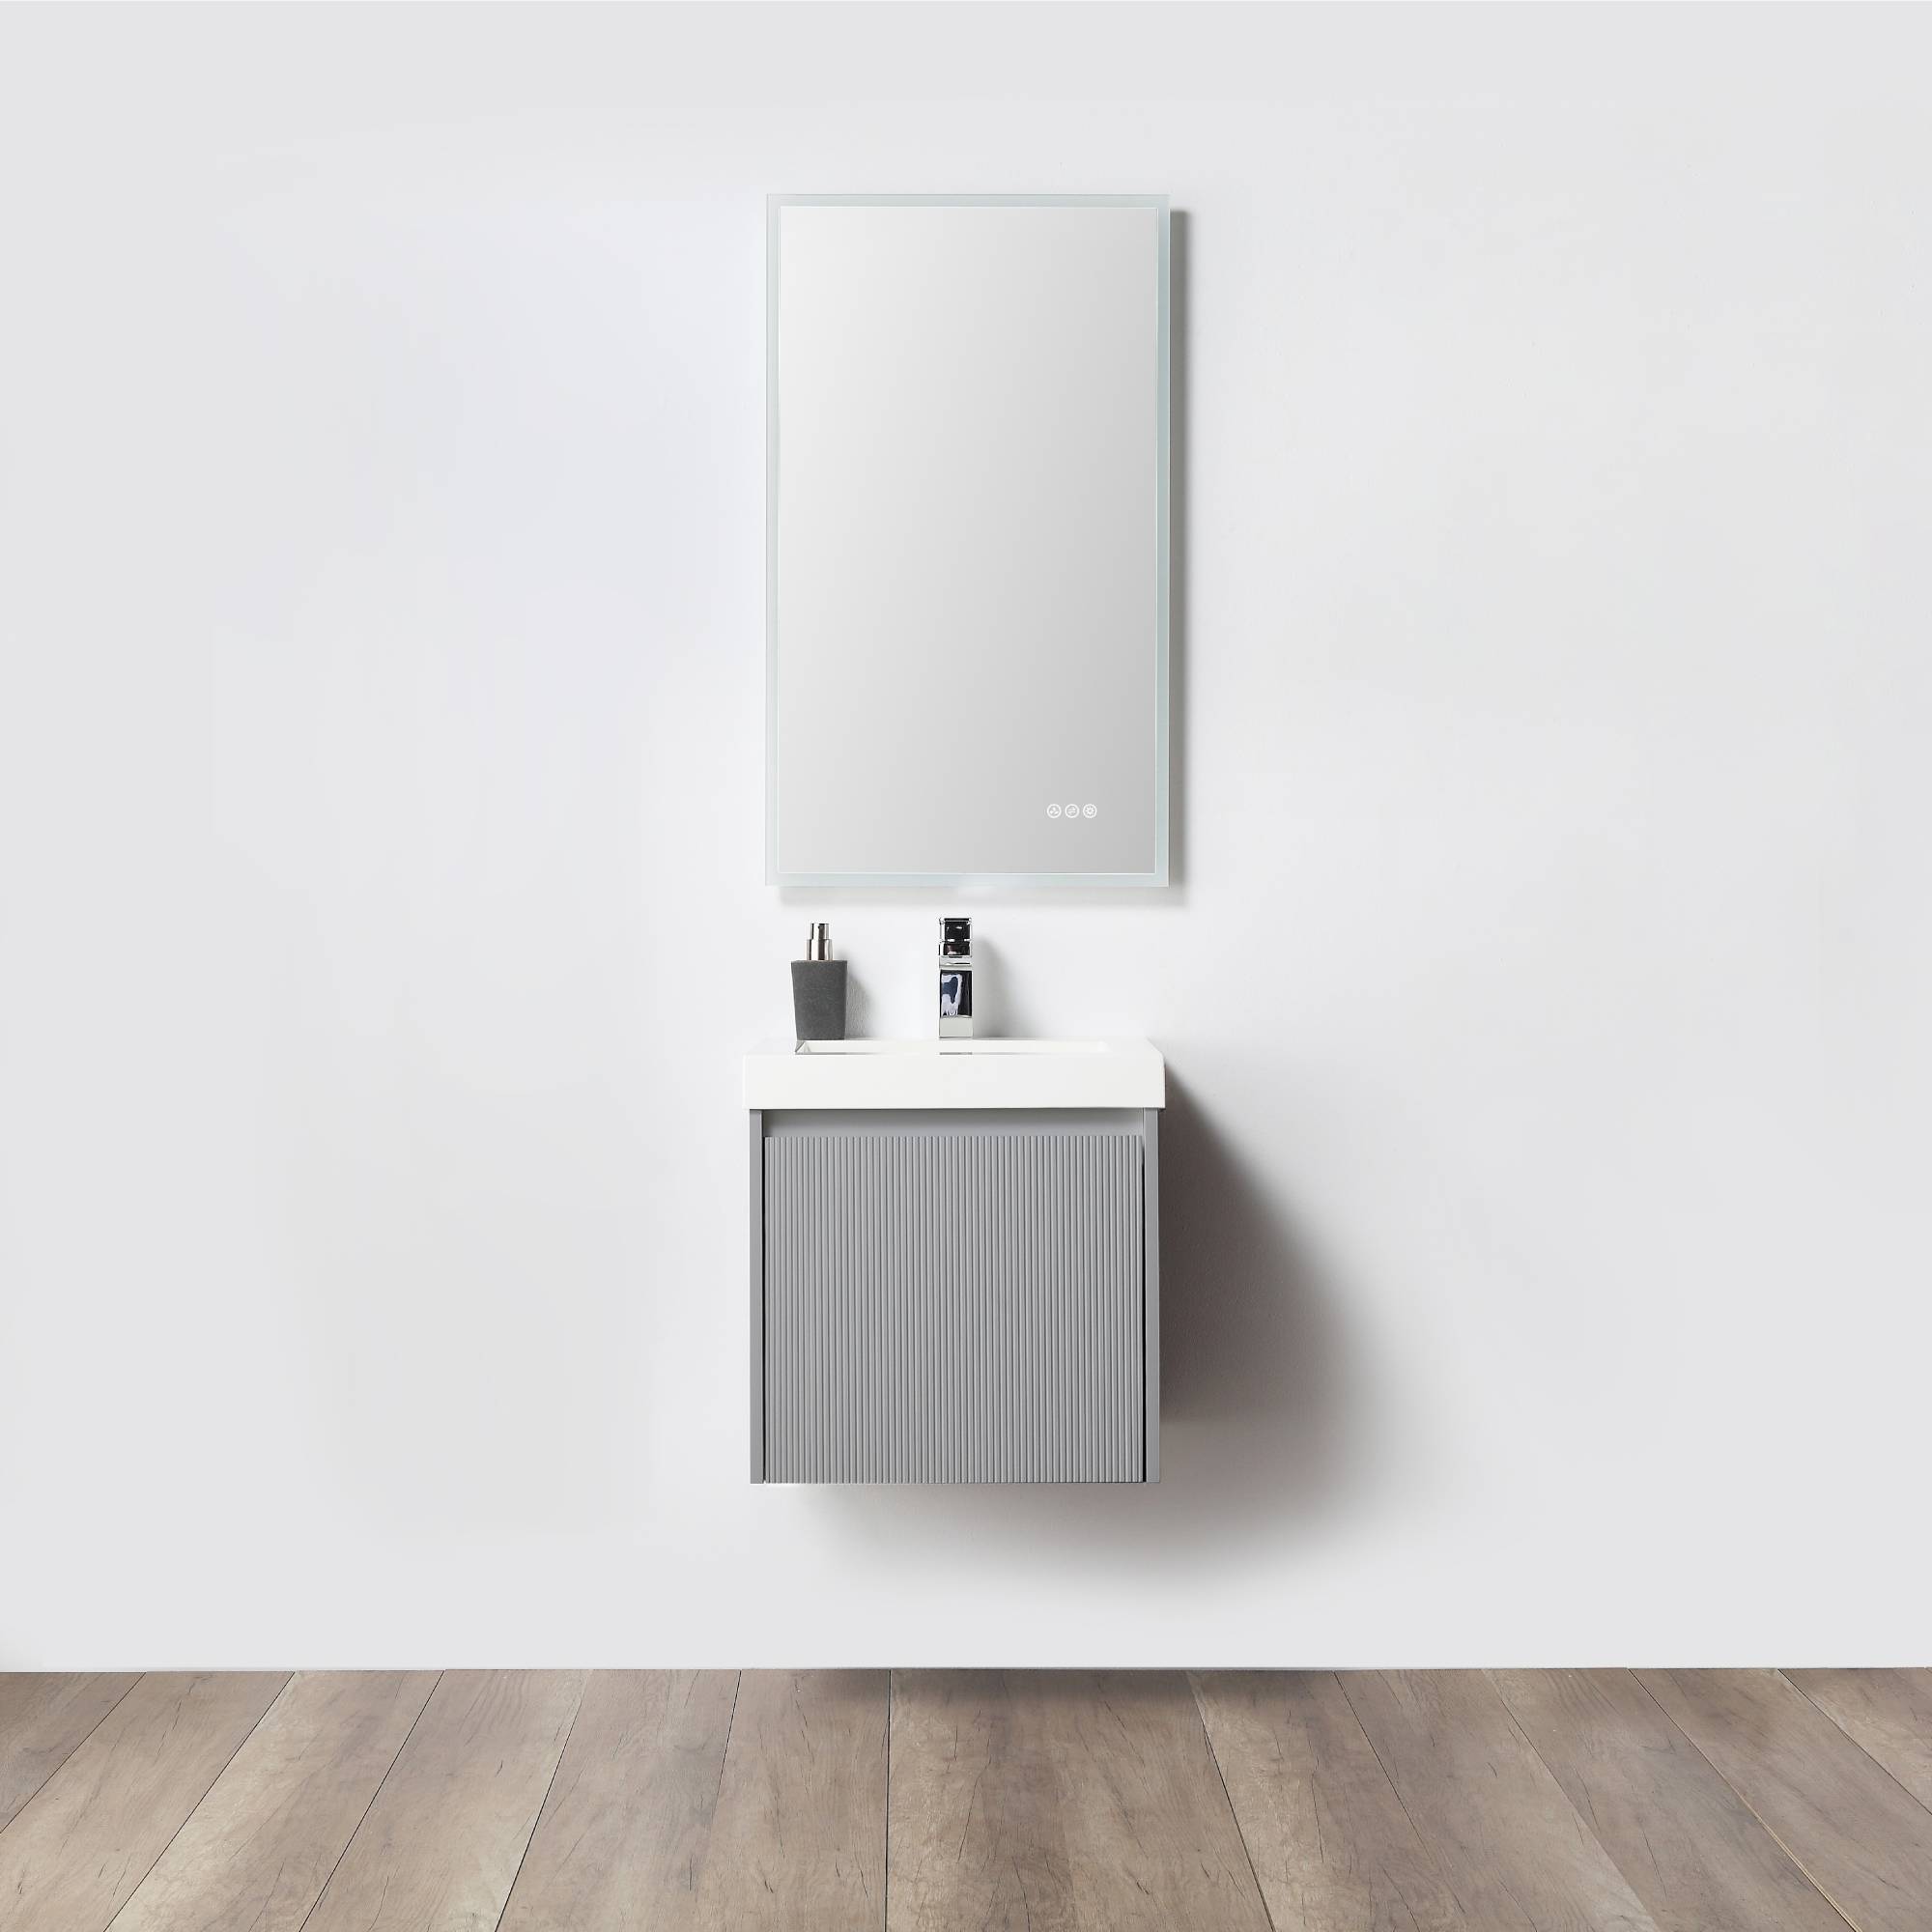 Positano 20" Bathroom Vanity  #size_20"  #color_light grey